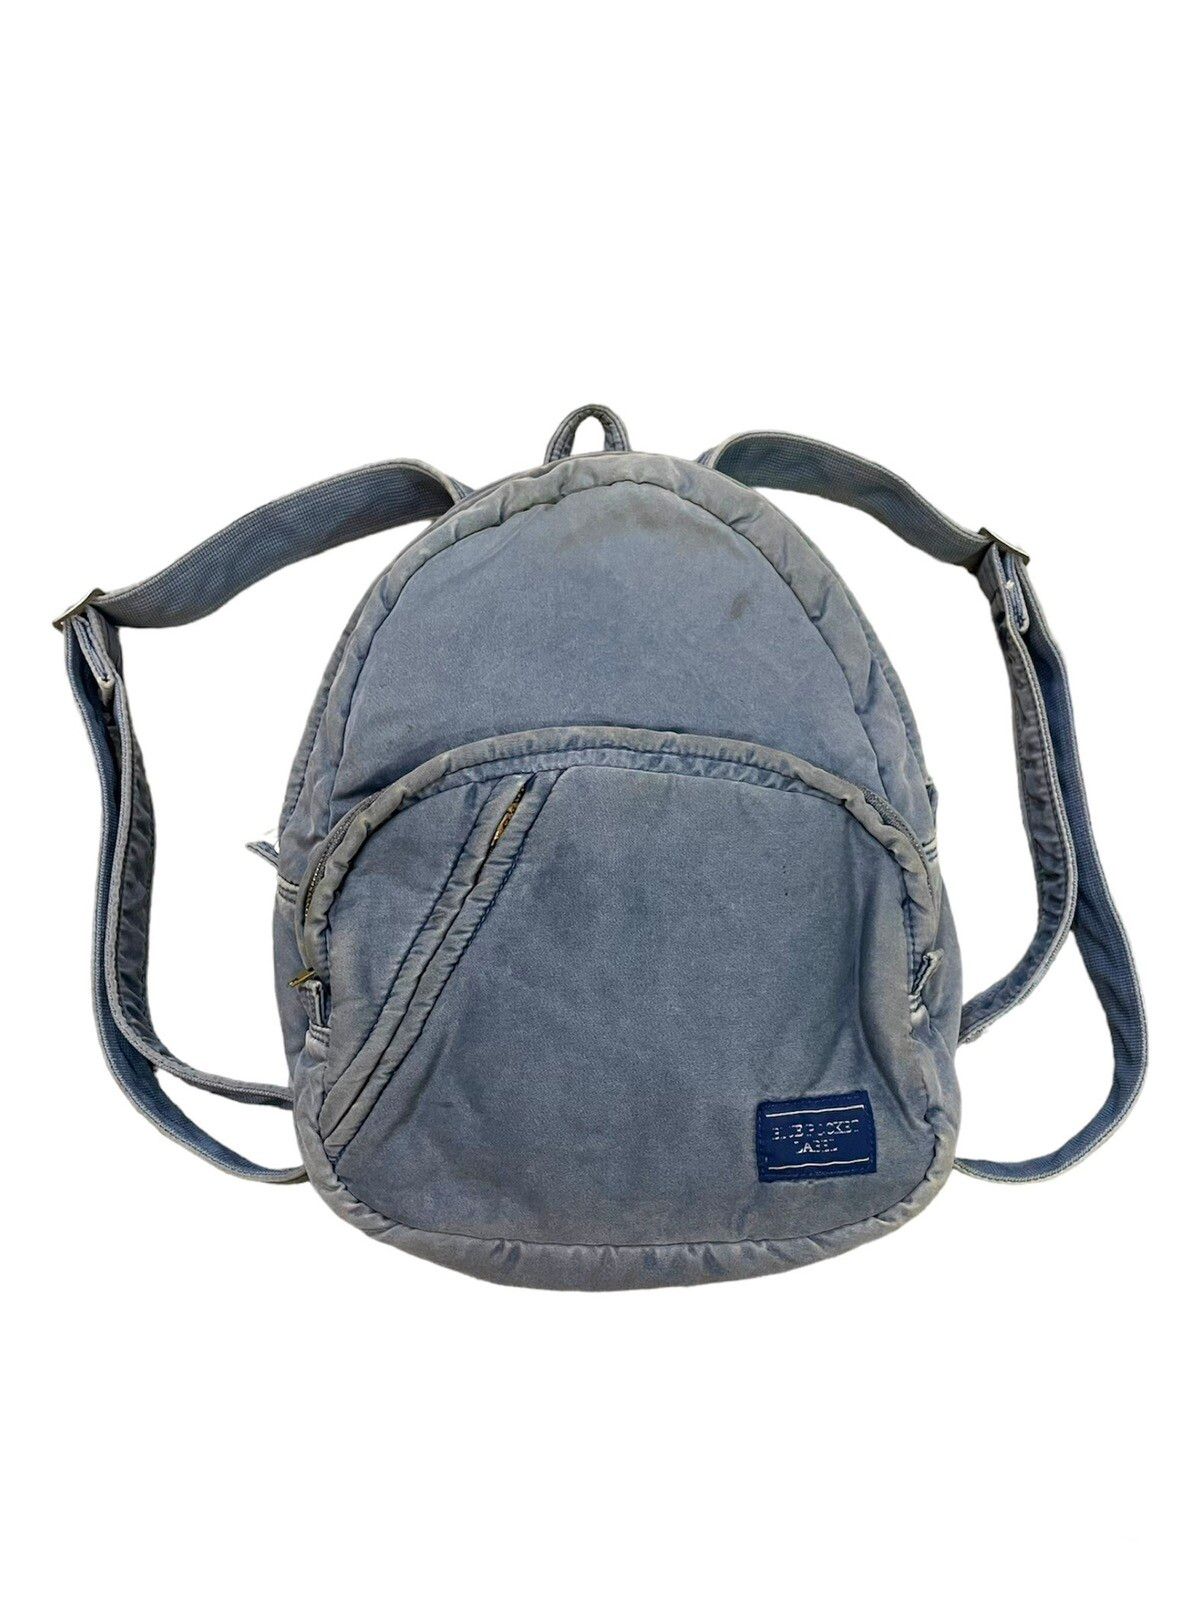 Porter Blue Pocket Label Luggage Label Nylon Paded Bag Pack - 1